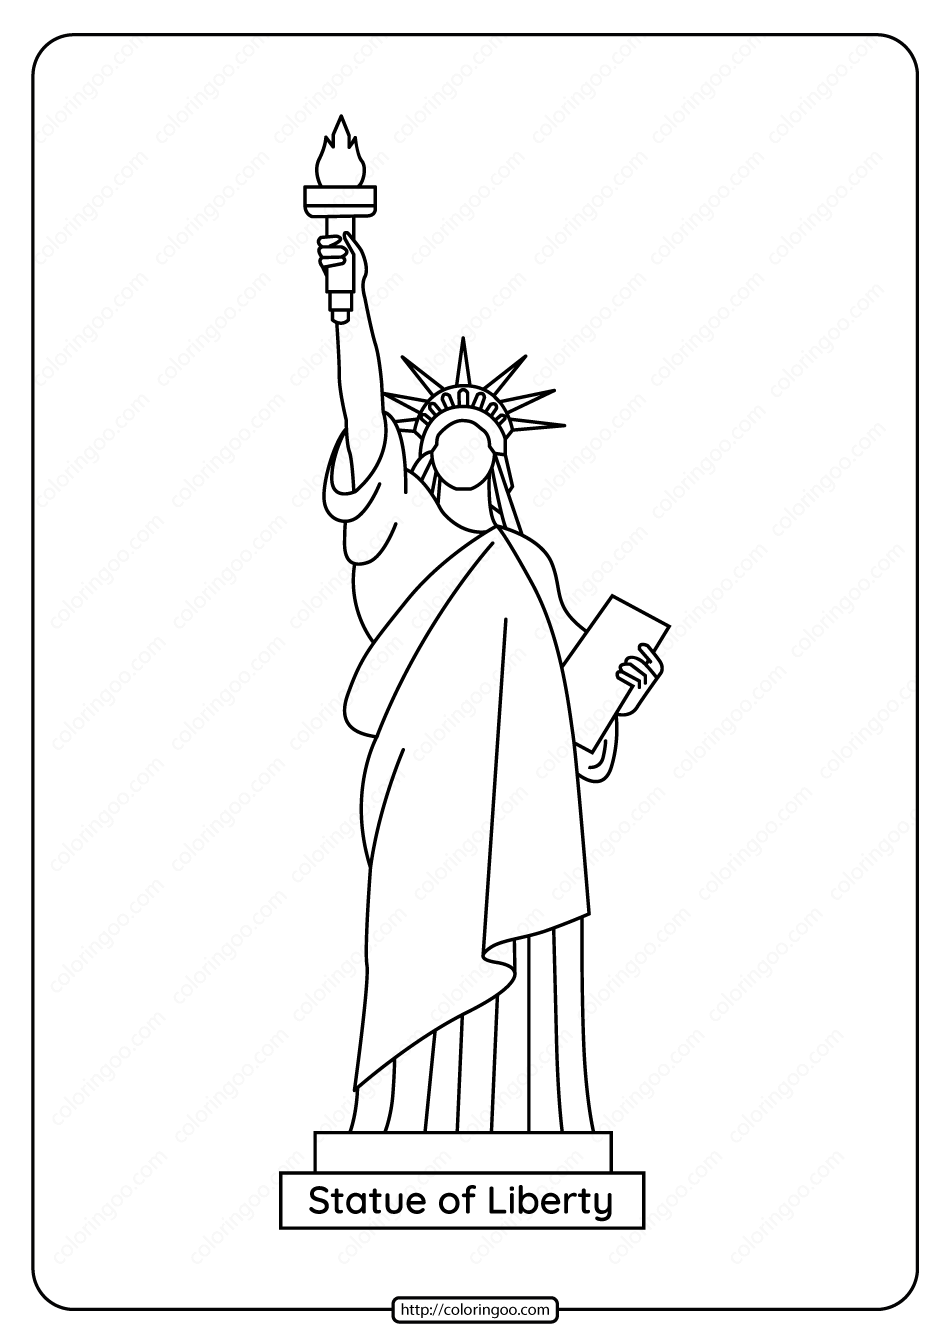 Статуя свободы рисунок для срисовки - 65 фото